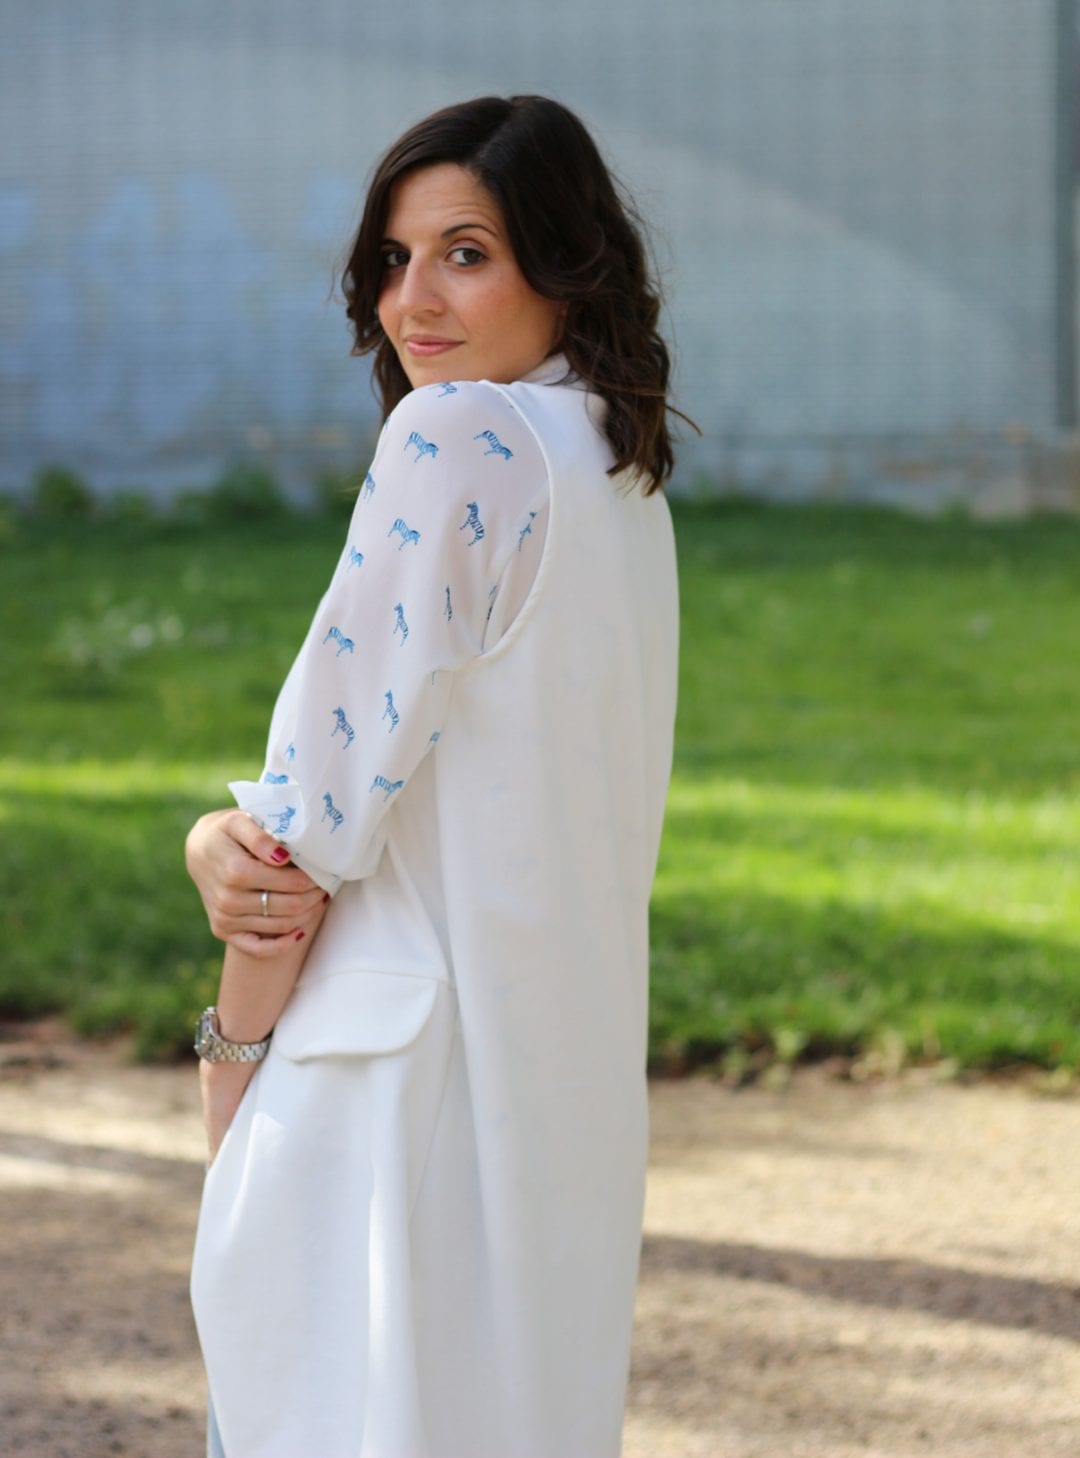 fashion blogger con look casual - chaleco blanco largo - jeans y blusa estampada